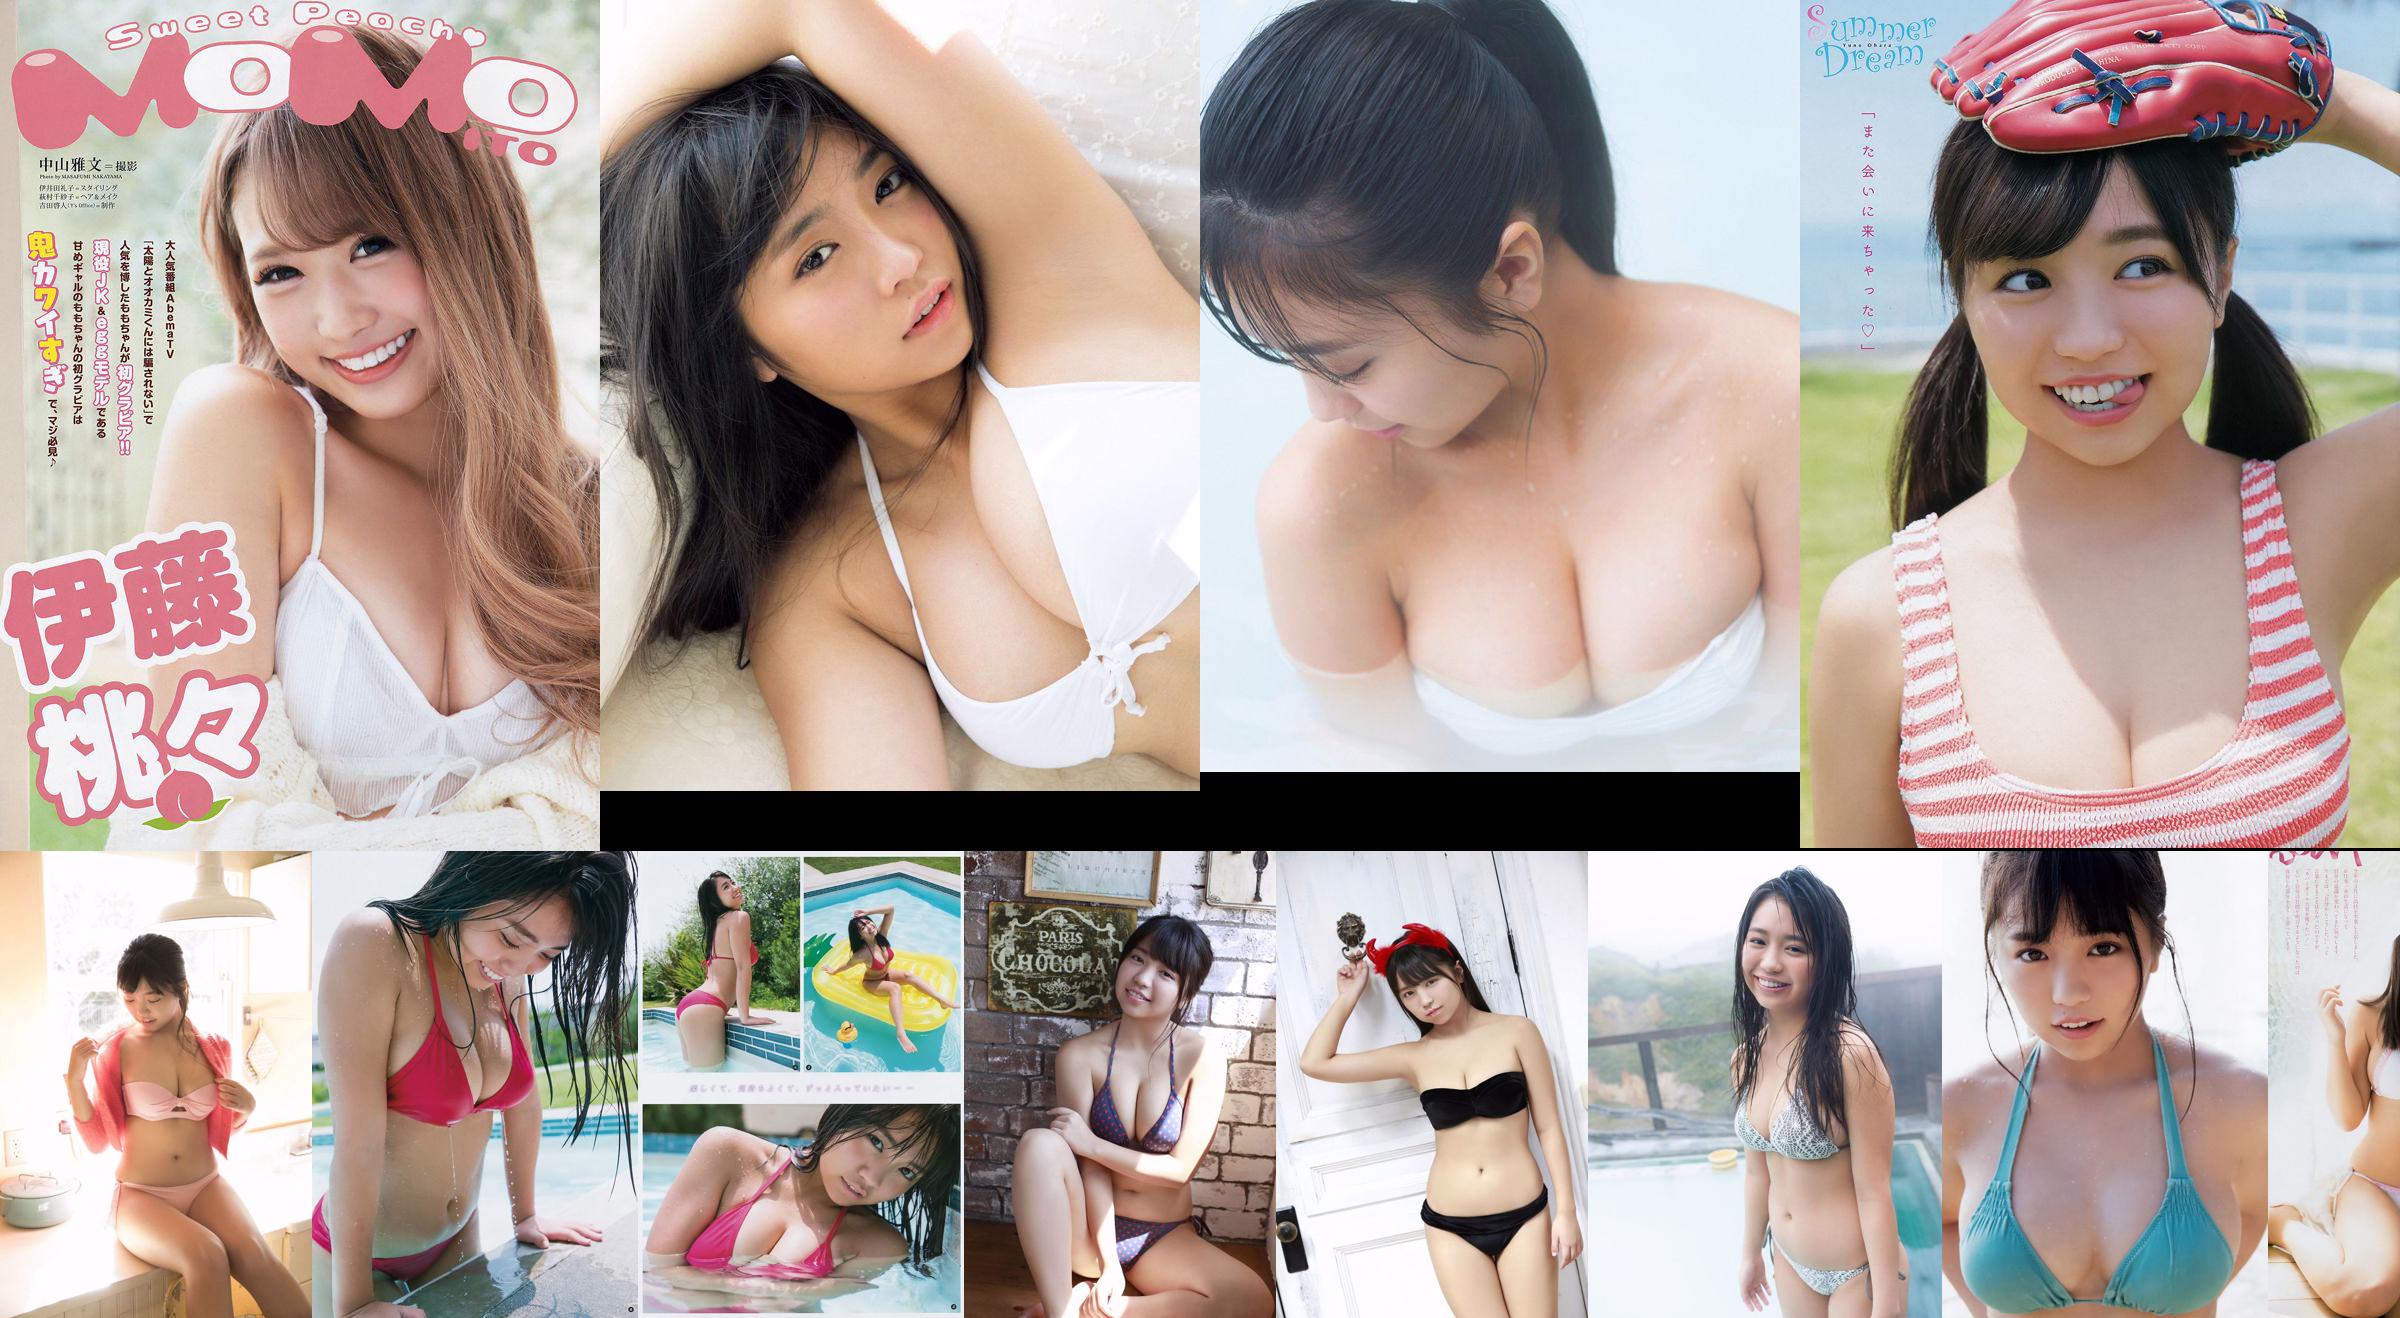 [Young Magazine] Yuno Ohara No.01 Photo Magazine in 2018 No.51a257 Pagina 1